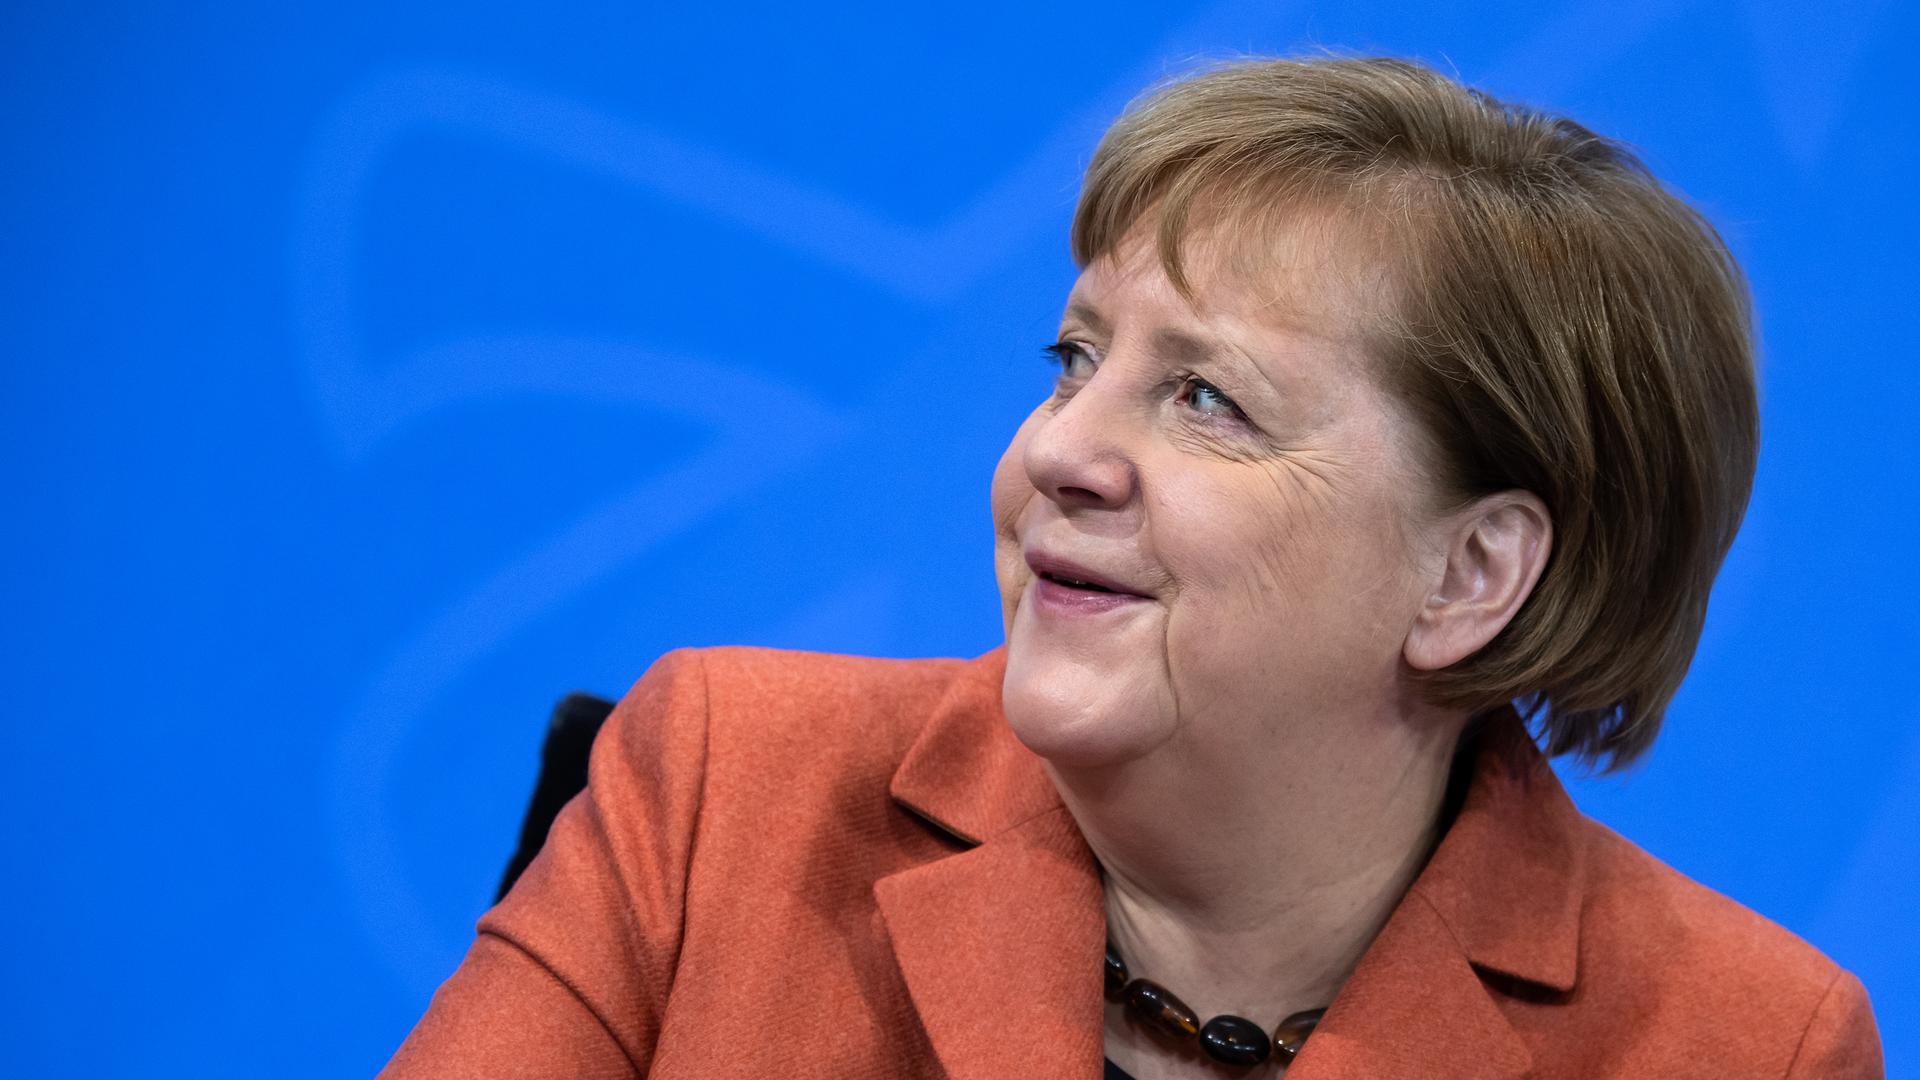 13.12.2020, Berlin: Bundeskanzlerin Angela Merkel (CDU) lächelt auf der Pressekonferenz im Bundeskanzleramt im Anschluss an die Schaltkonferenz von ihr und der Bundesregierung mit den Ministerpräsidenten der Länder. Das öffentliche Leben in Deutschland soll angesichts der sich ausbreitenden Corona-Pandemie schon ab kommenden Mittwoch (16. Dezember 2020) drastisch heruntergefahren werden. Foto: Bernd von Jutrczenka/dpa-Pool/dpa +++ dpa-Bildfunk +++